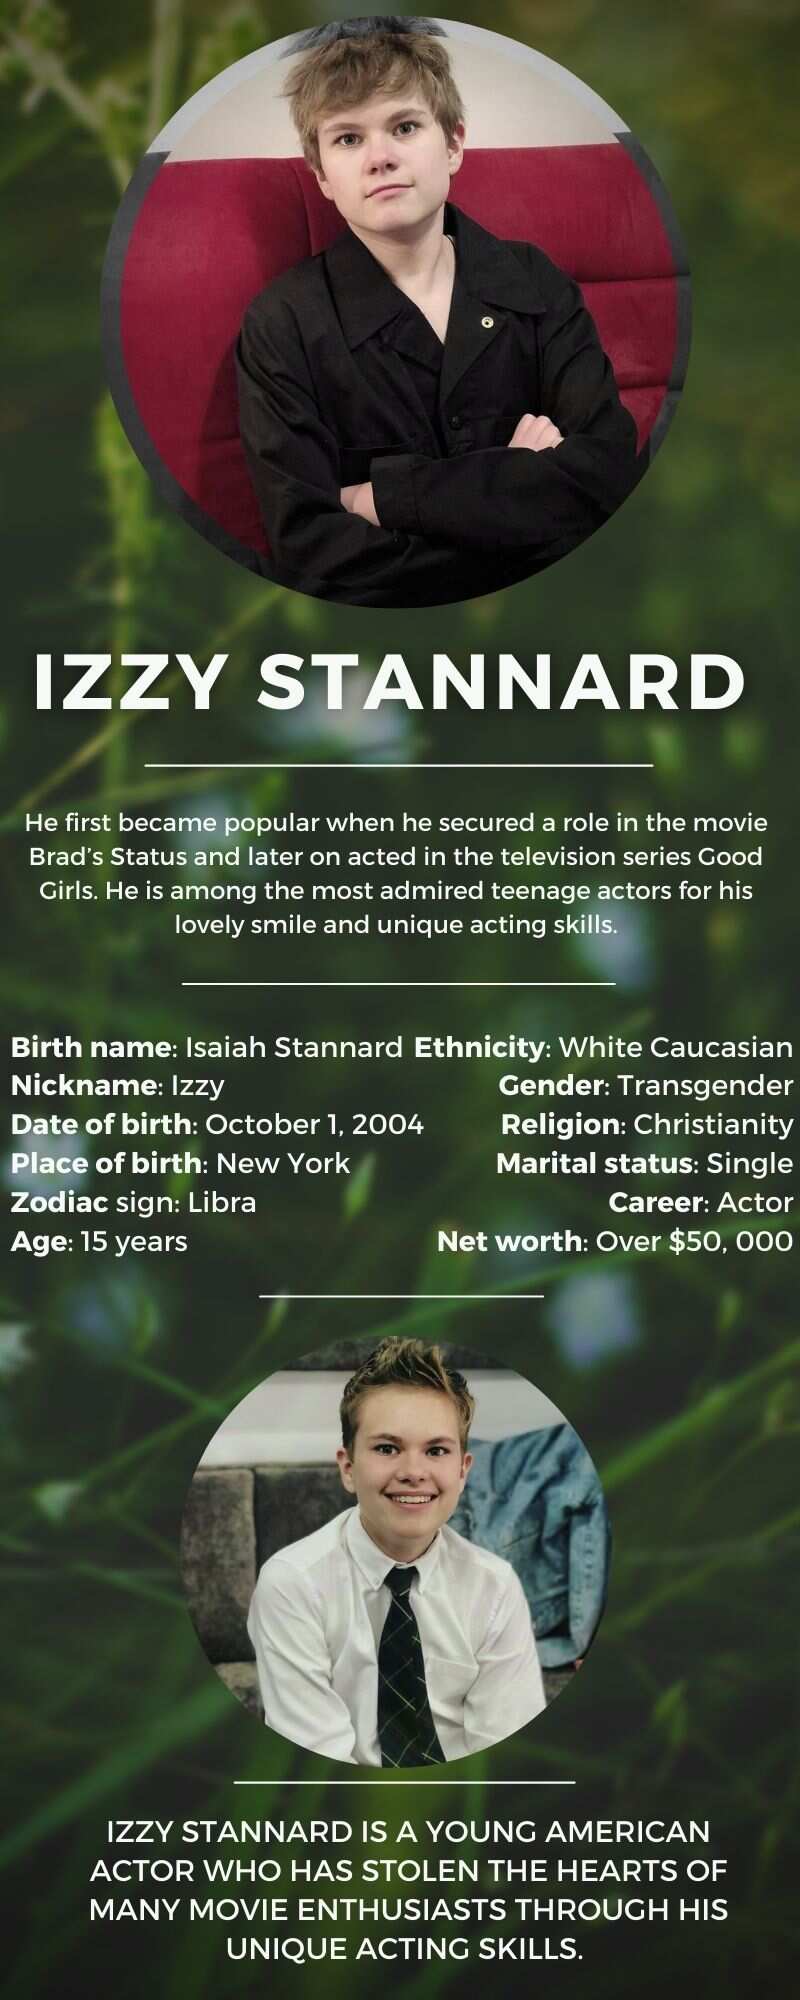 Izzy Stannard biography